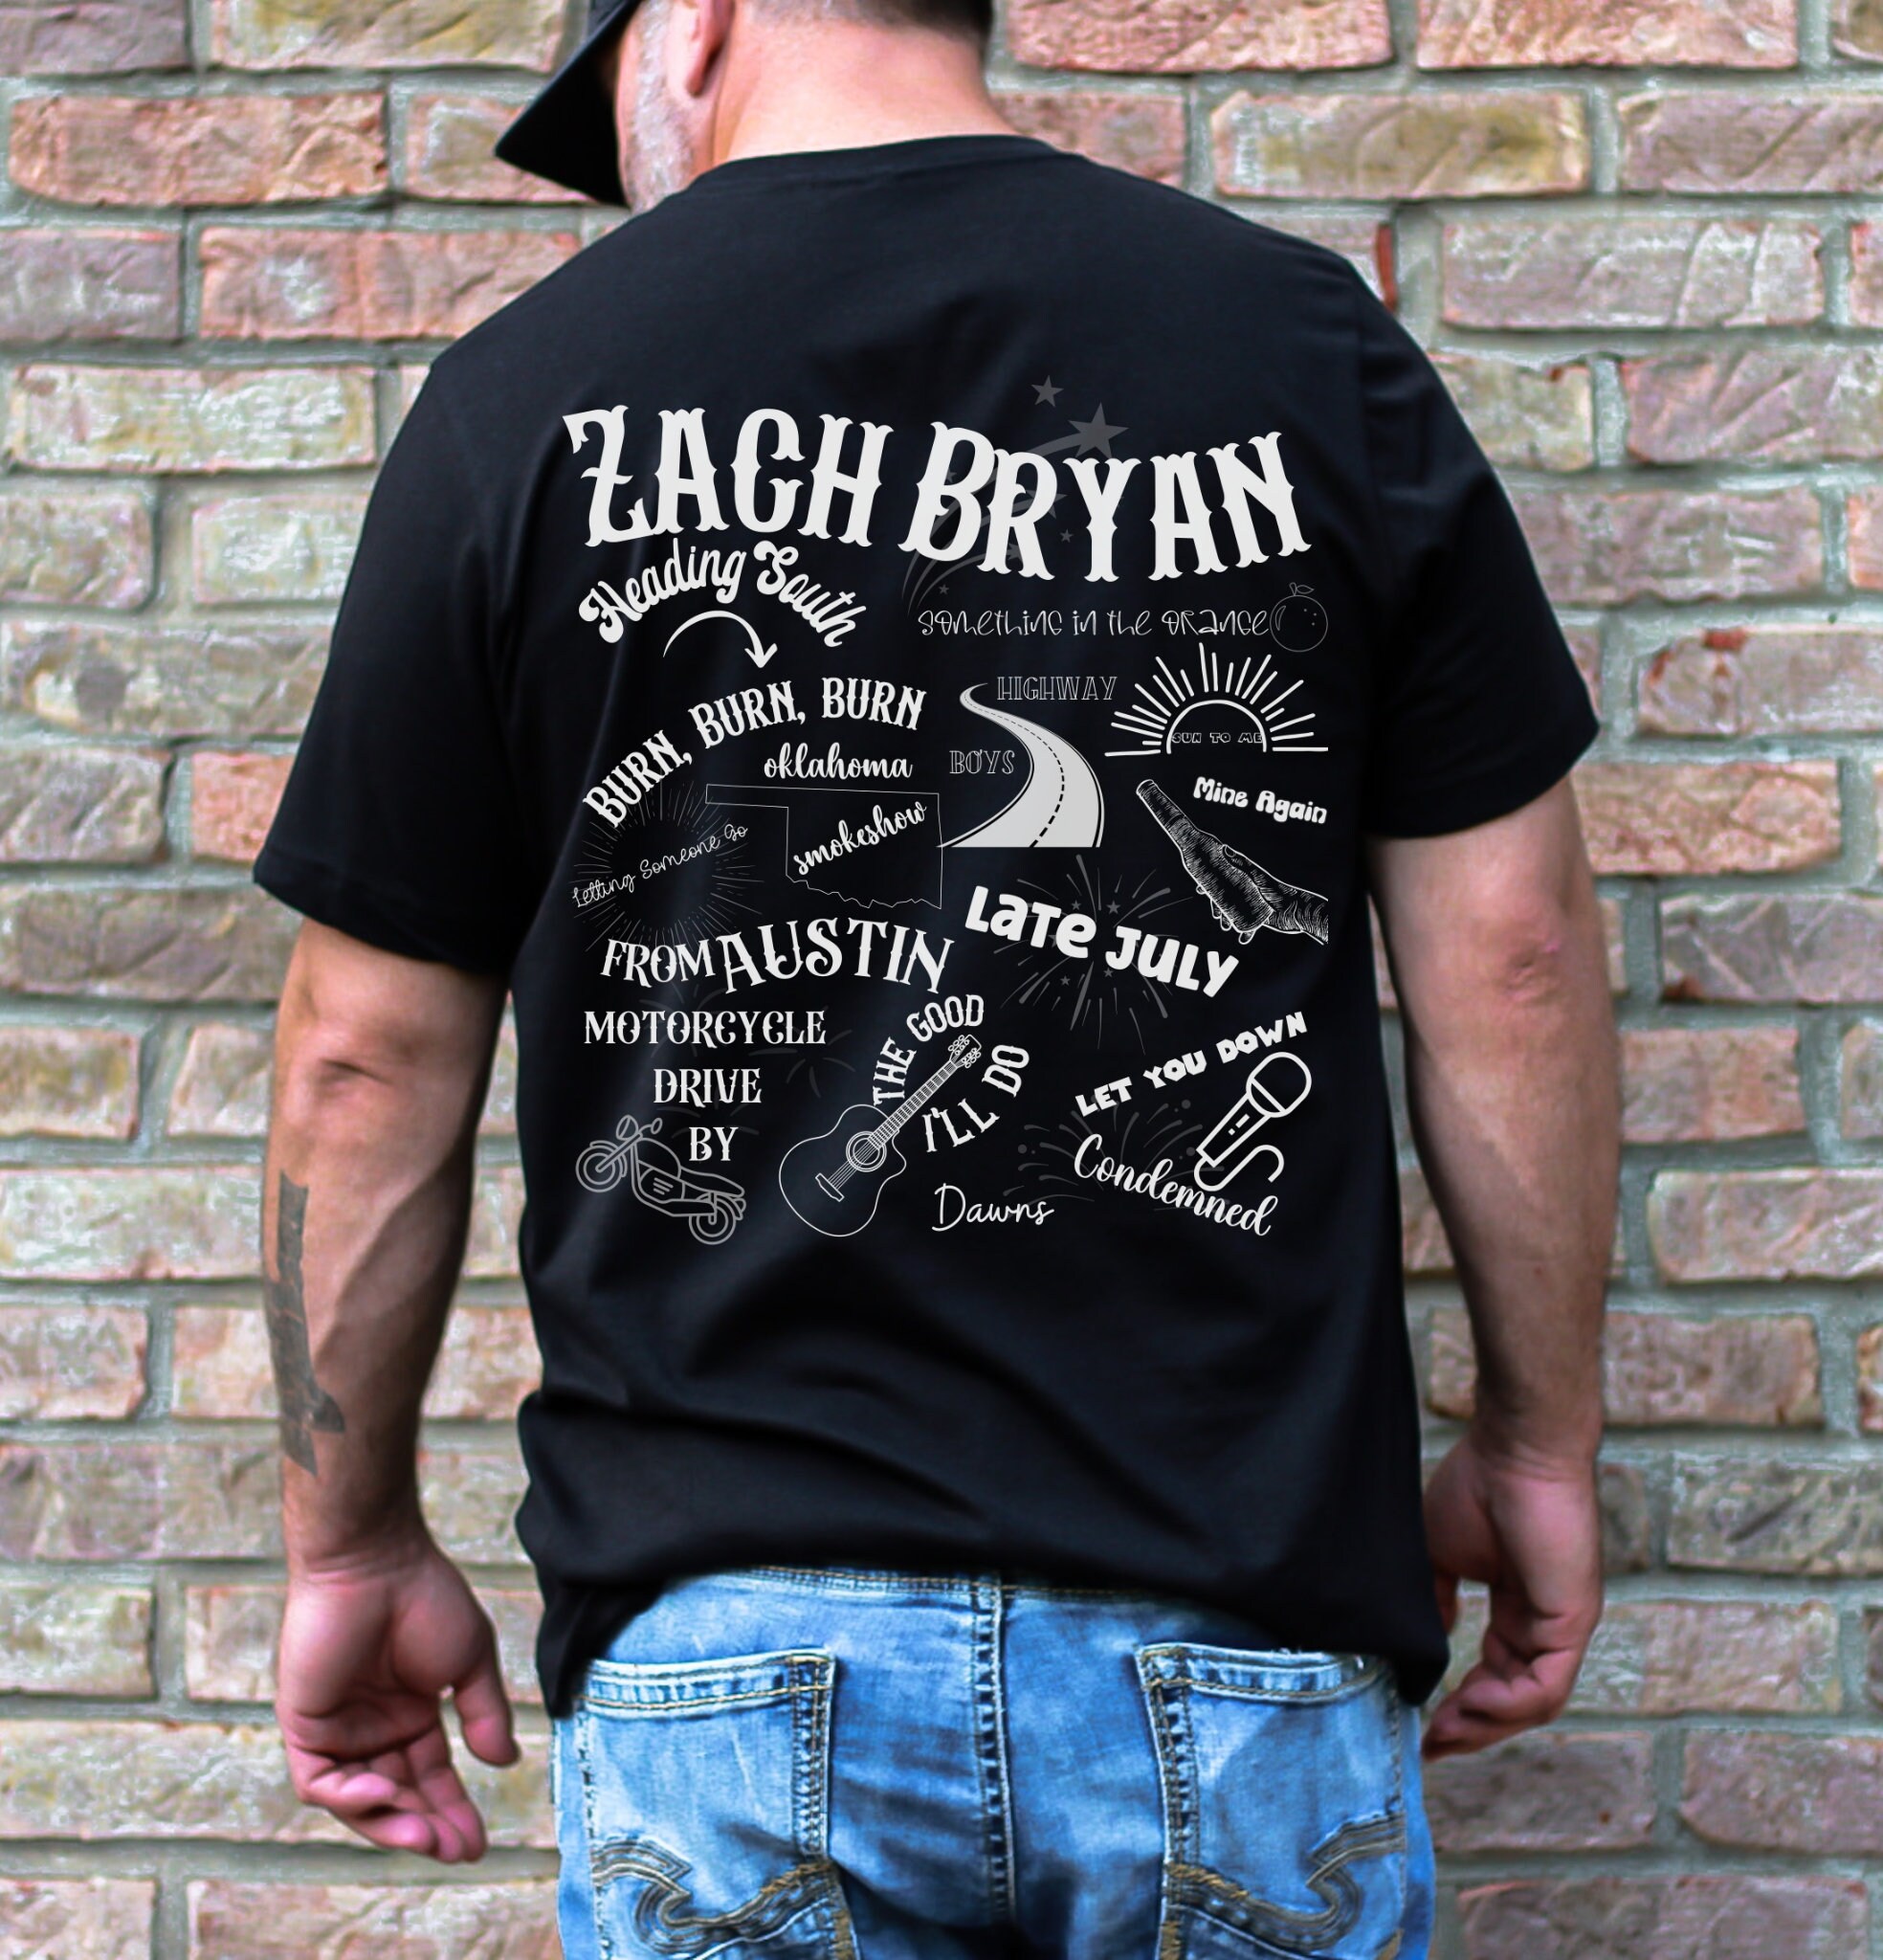 Country Western Concert Zach Bryan Music Tour Merch T Shirt